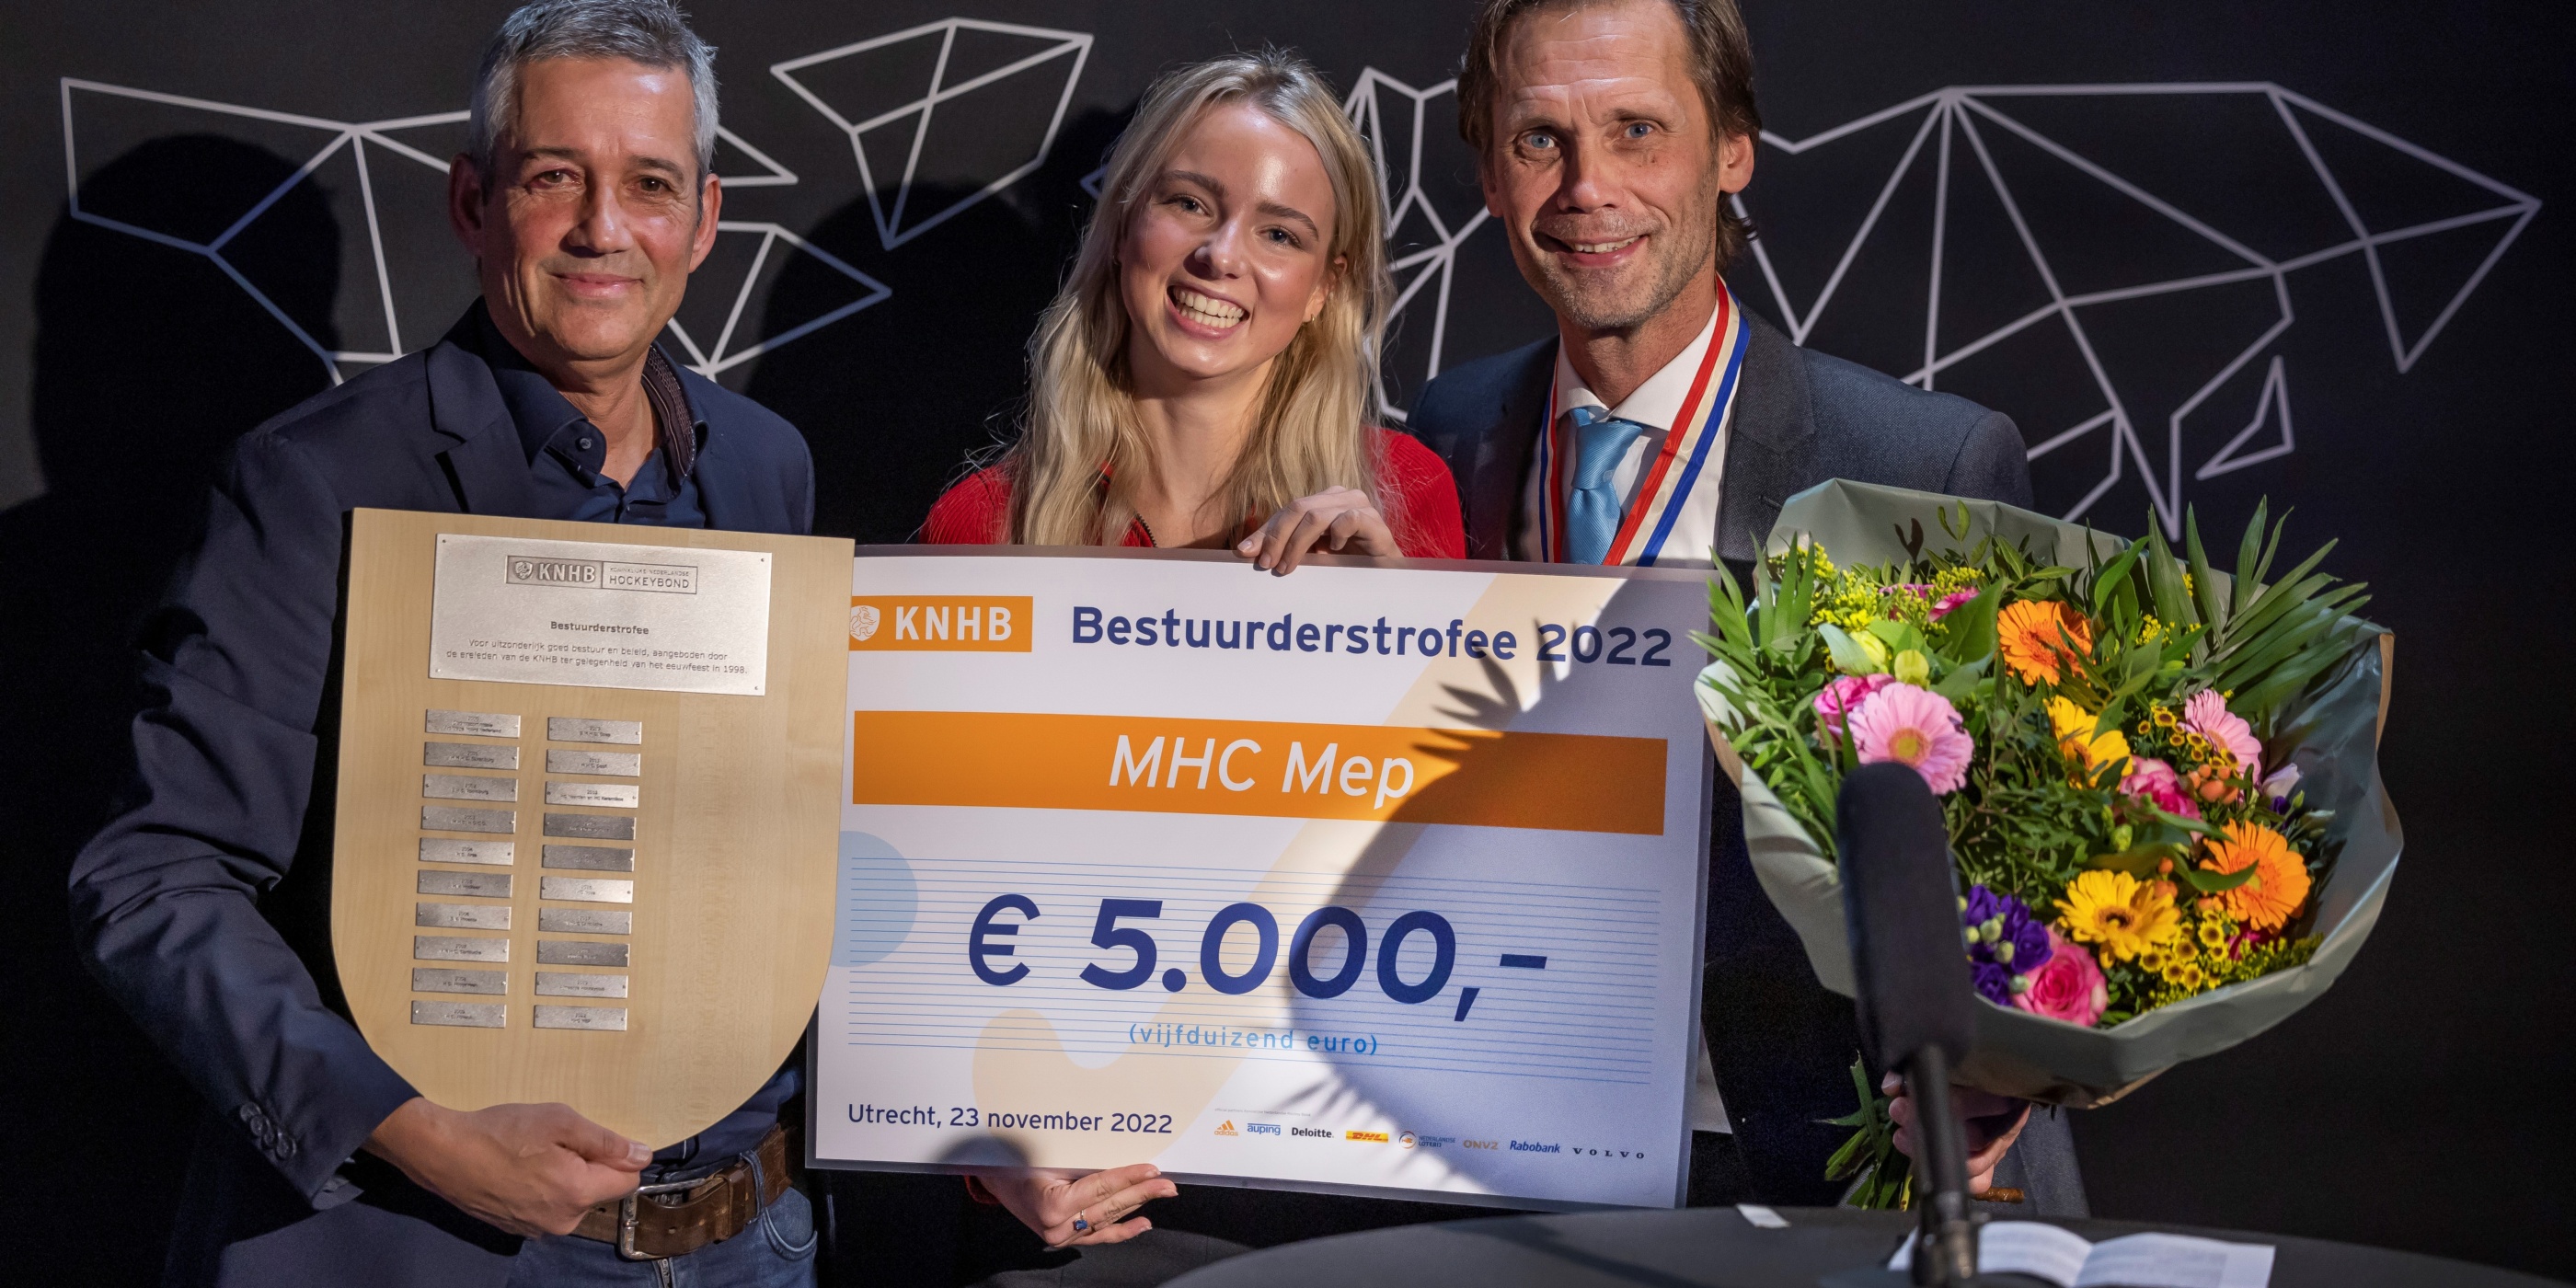 Maatschappelijk impact maken: MHC MEP wint Bestuurderstrofee 2022